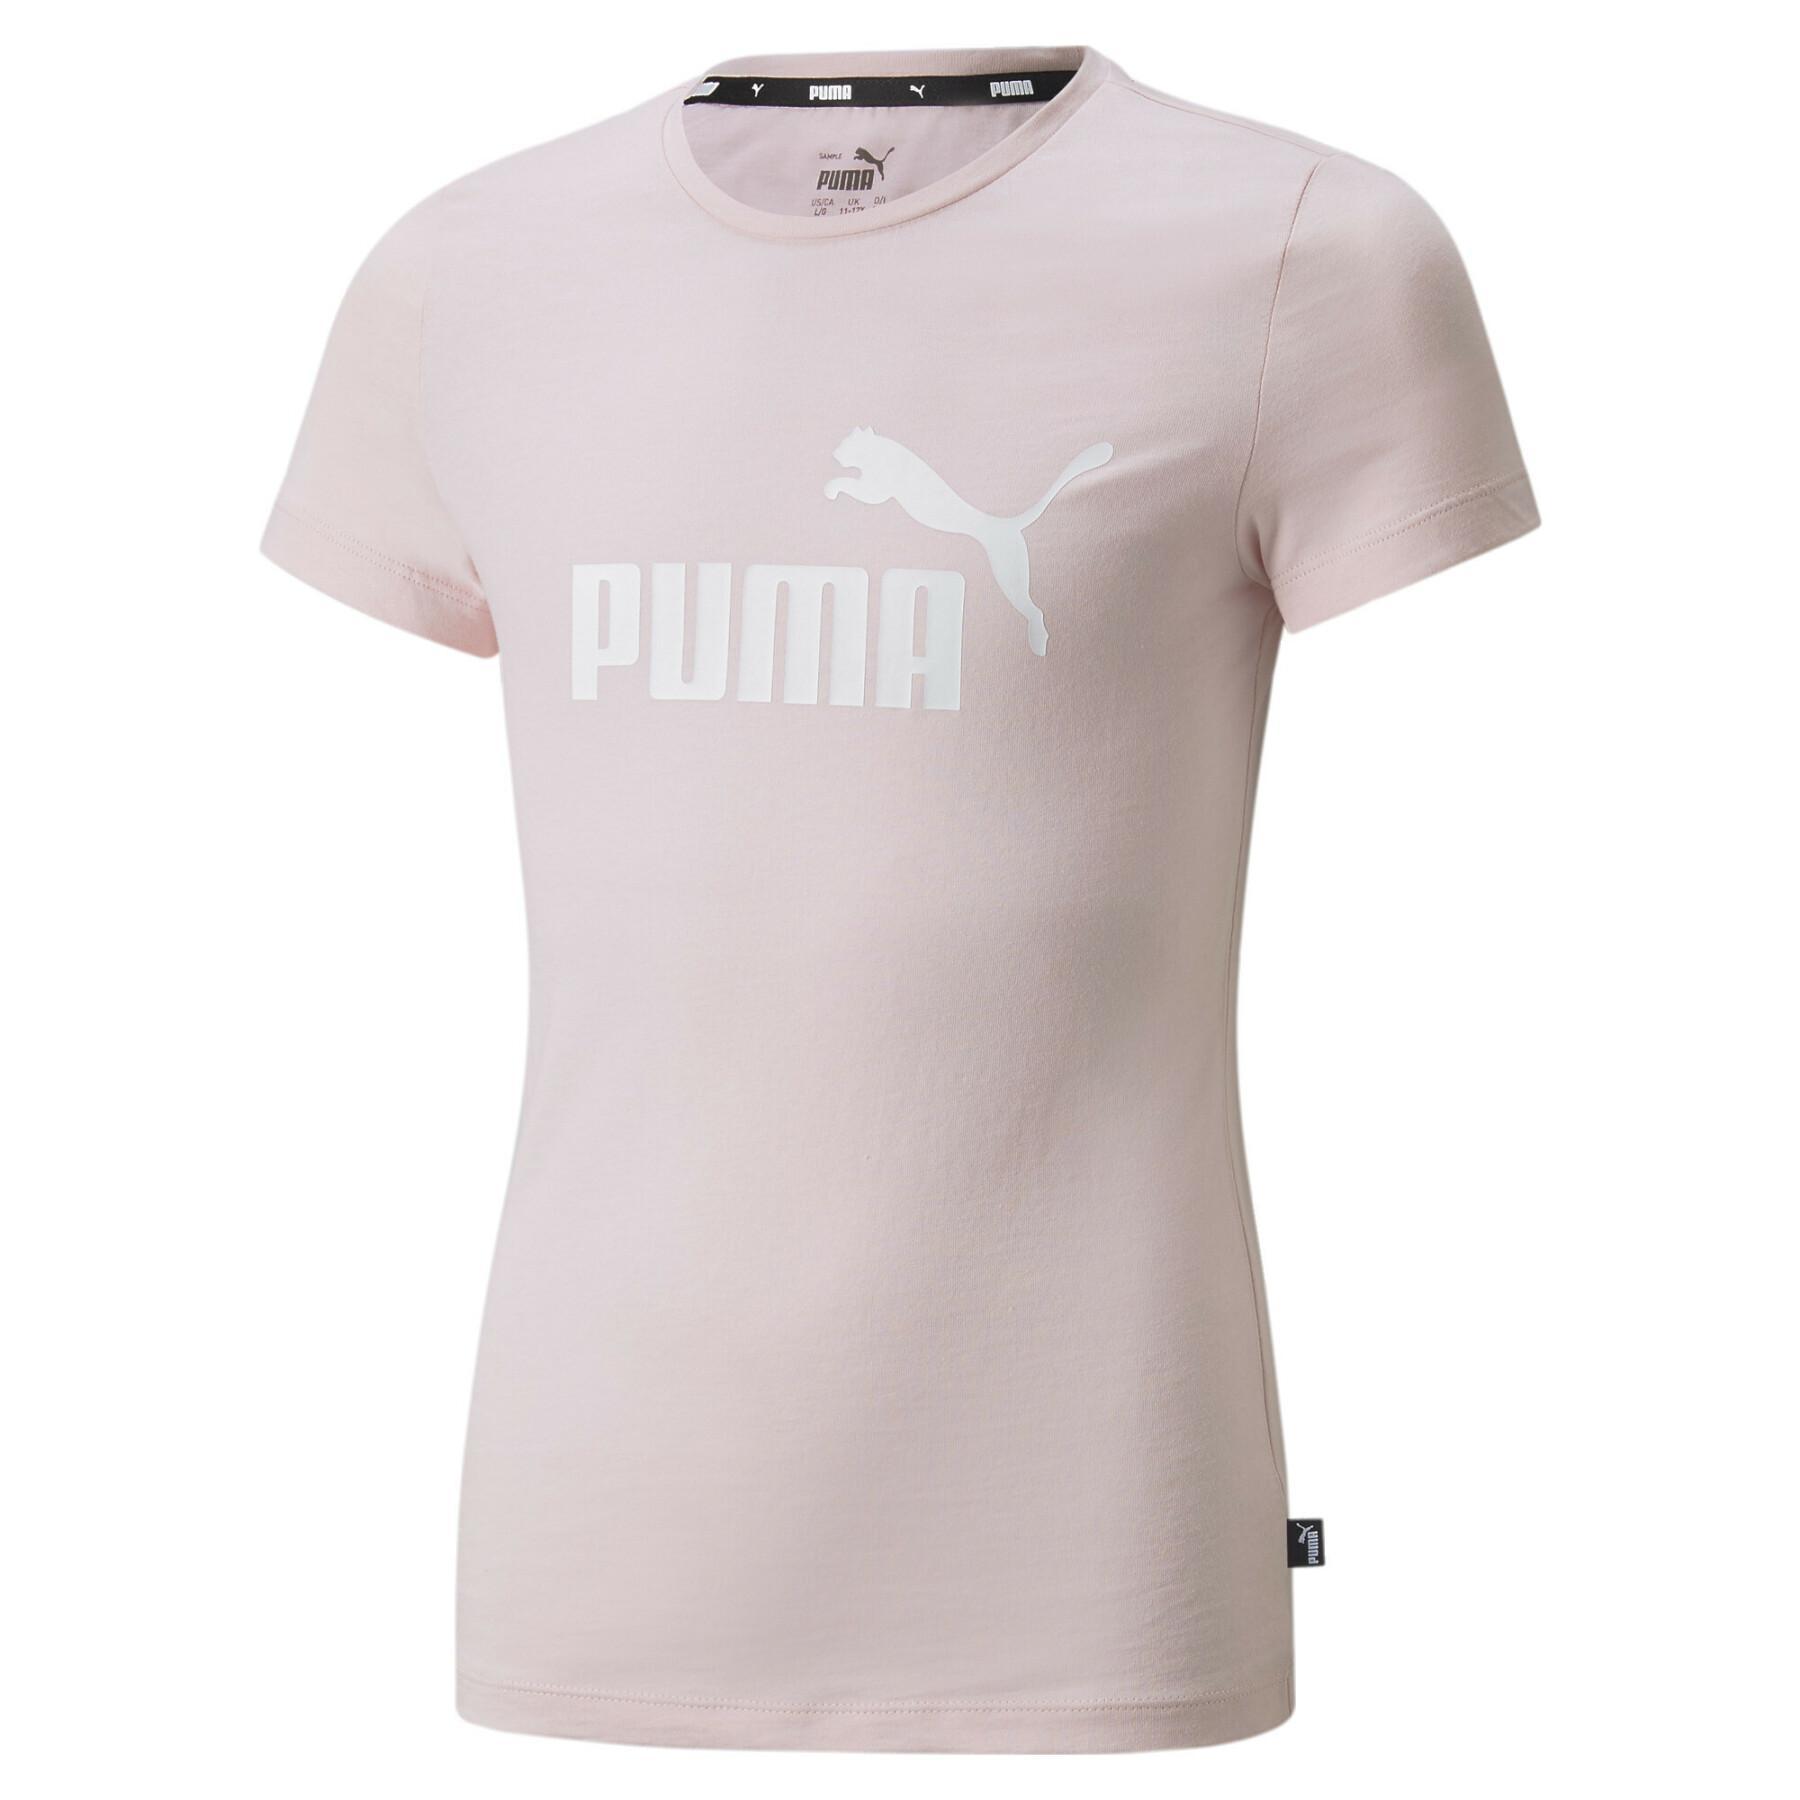 Koszulka dziewczęca Puma Essentiel Logo